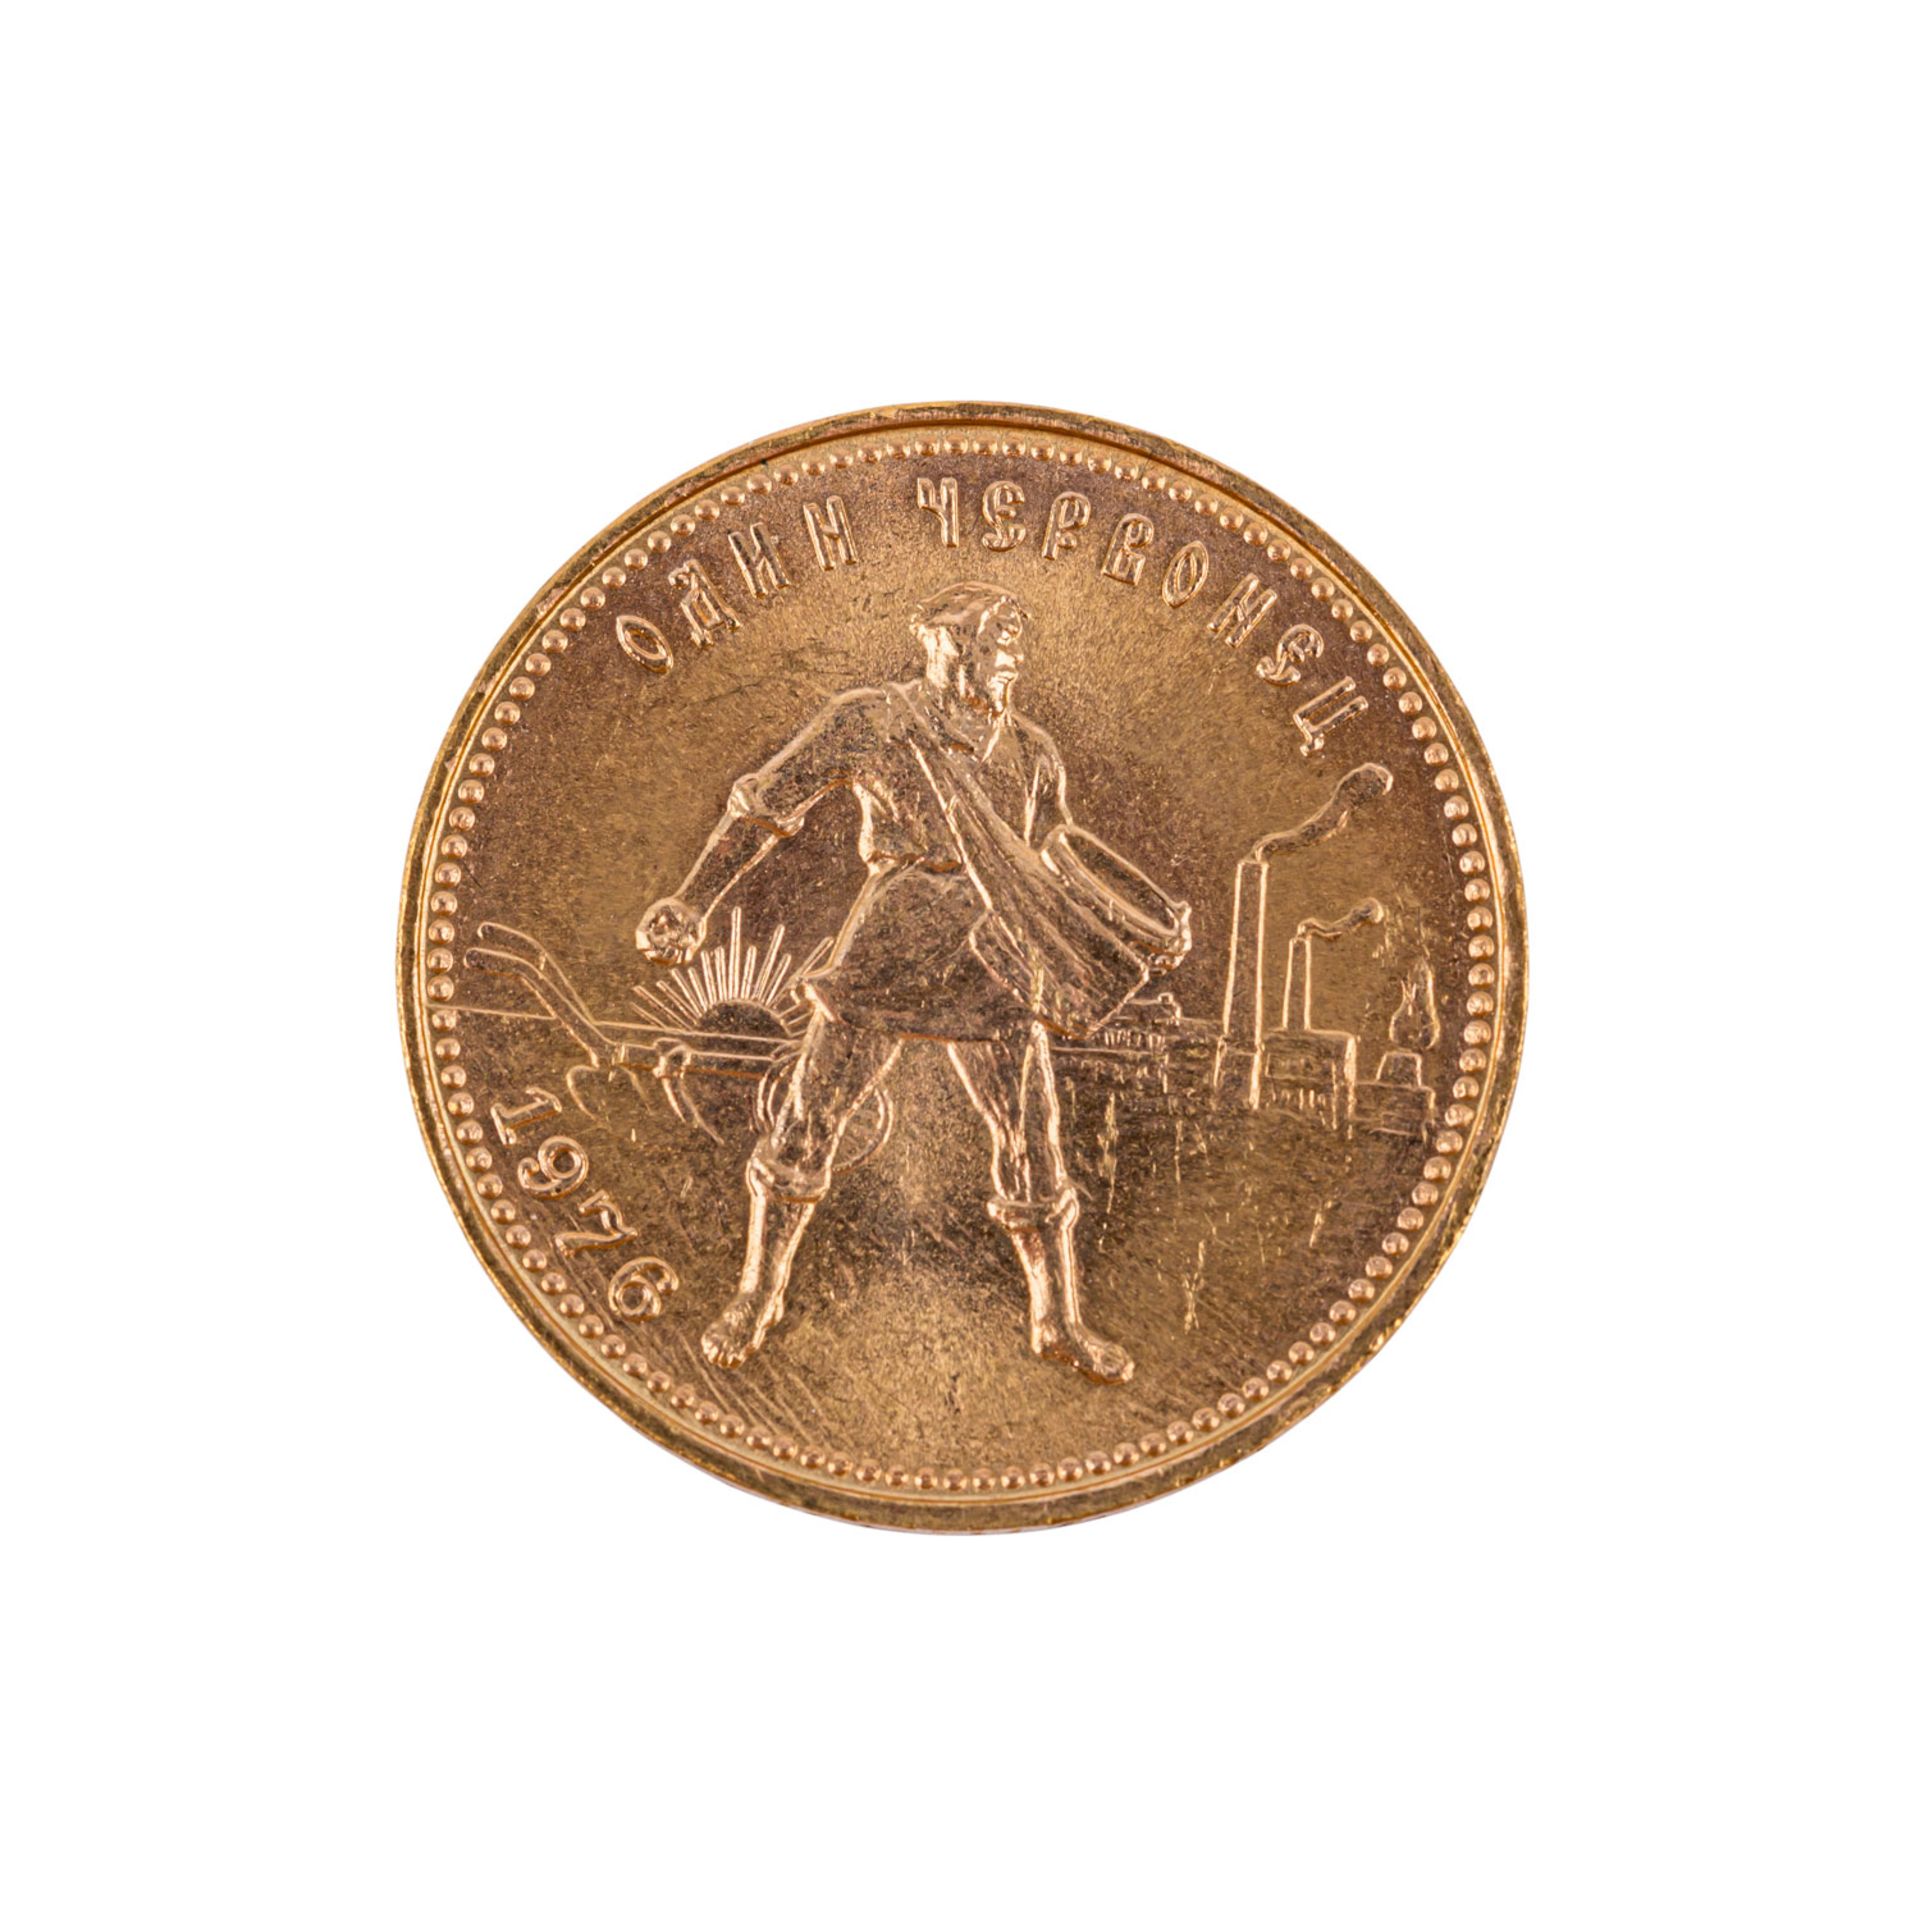 Russland/GOLD - 10 Rubel 1976, Tscherwonetz, vz.,7,74g GOLD fein.Russia/GOLD - 10 Roubles 1976